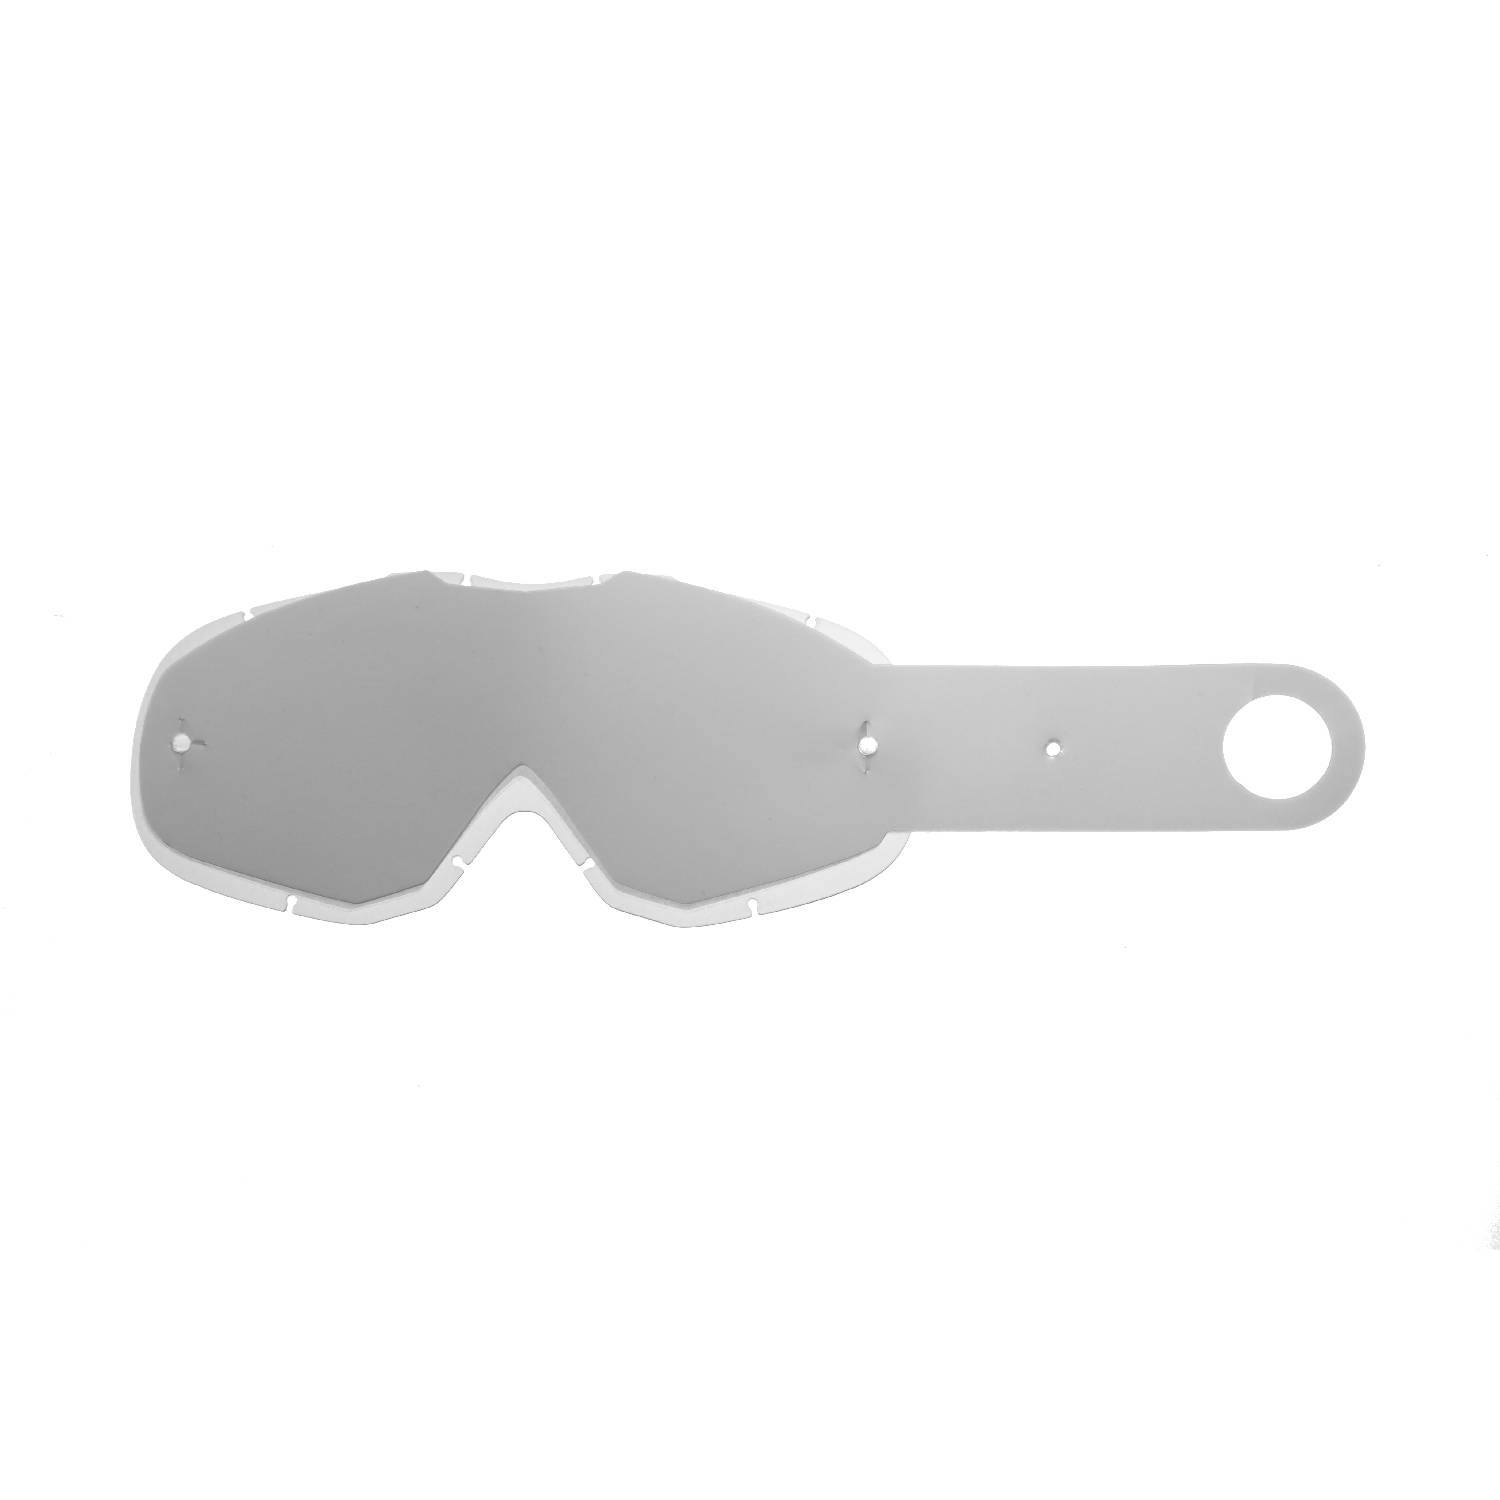 Lente trasparente + 10 Strappi (Combo) compatibile per occhiale/maschera Thor Ally